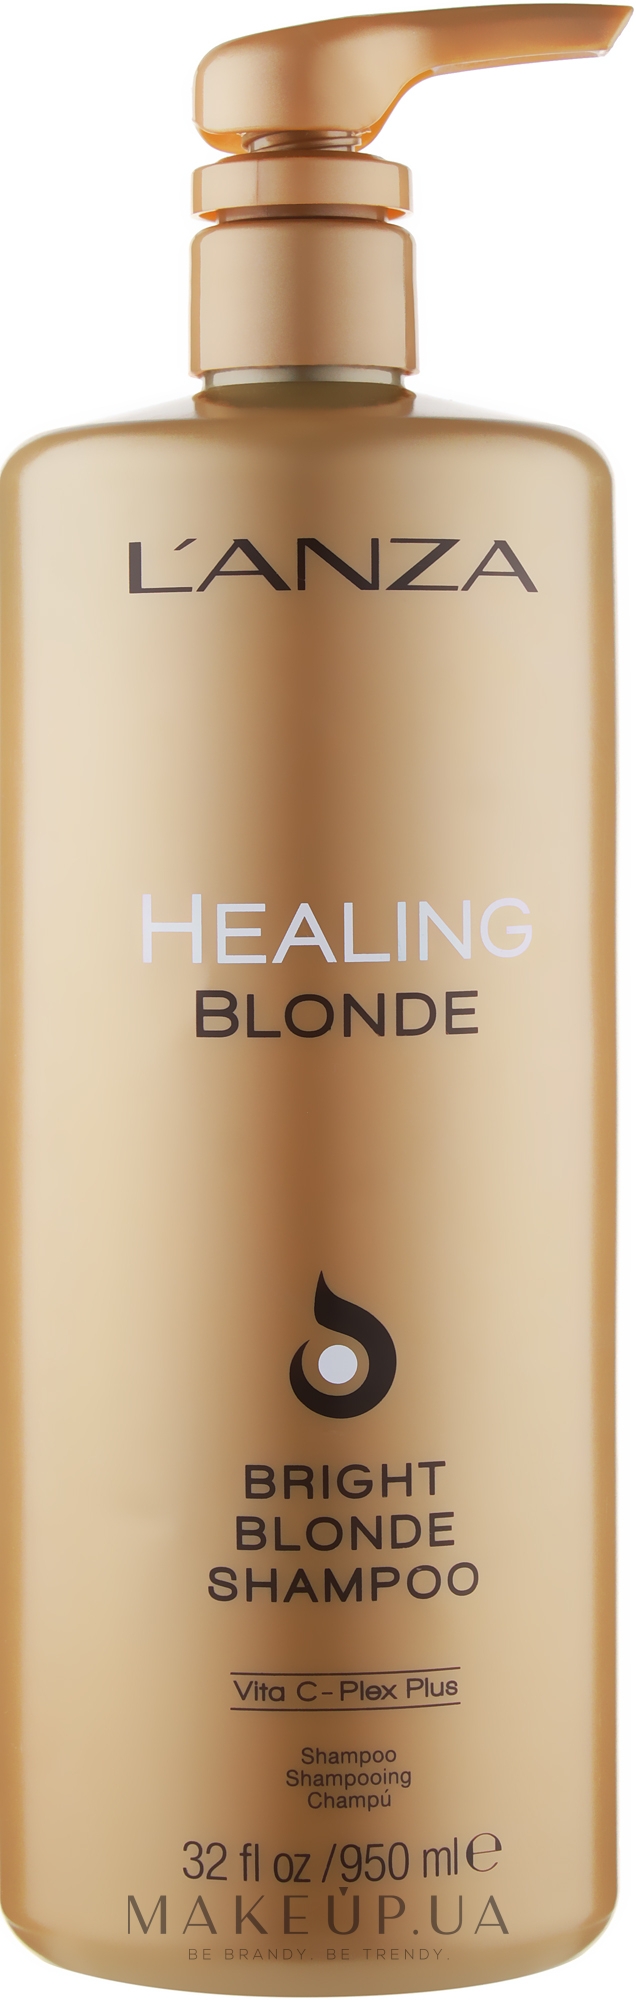 Целебный шампунь для натуральных и обесцвеченных светлых волос - L'anza Healing Blonde Bright Blonde Shampoo — фото 950ml